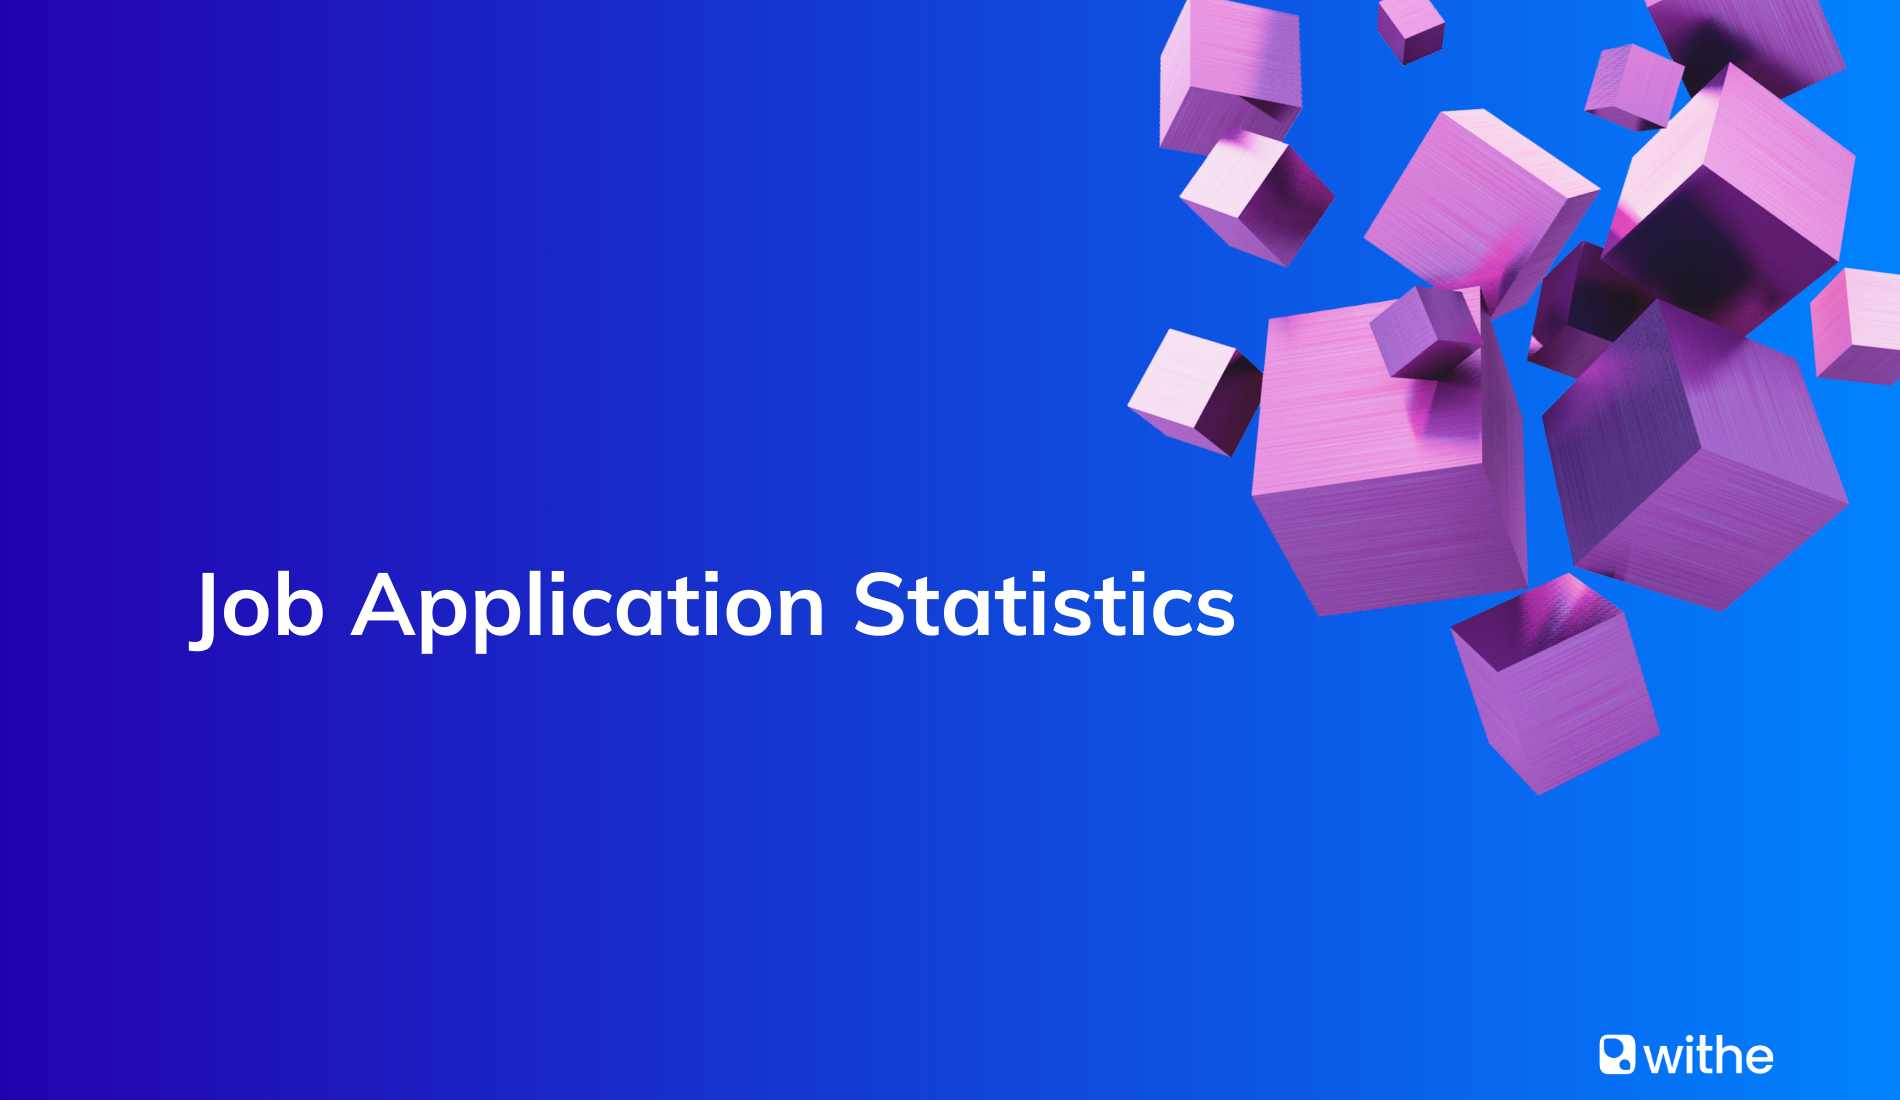 Job application statistics report